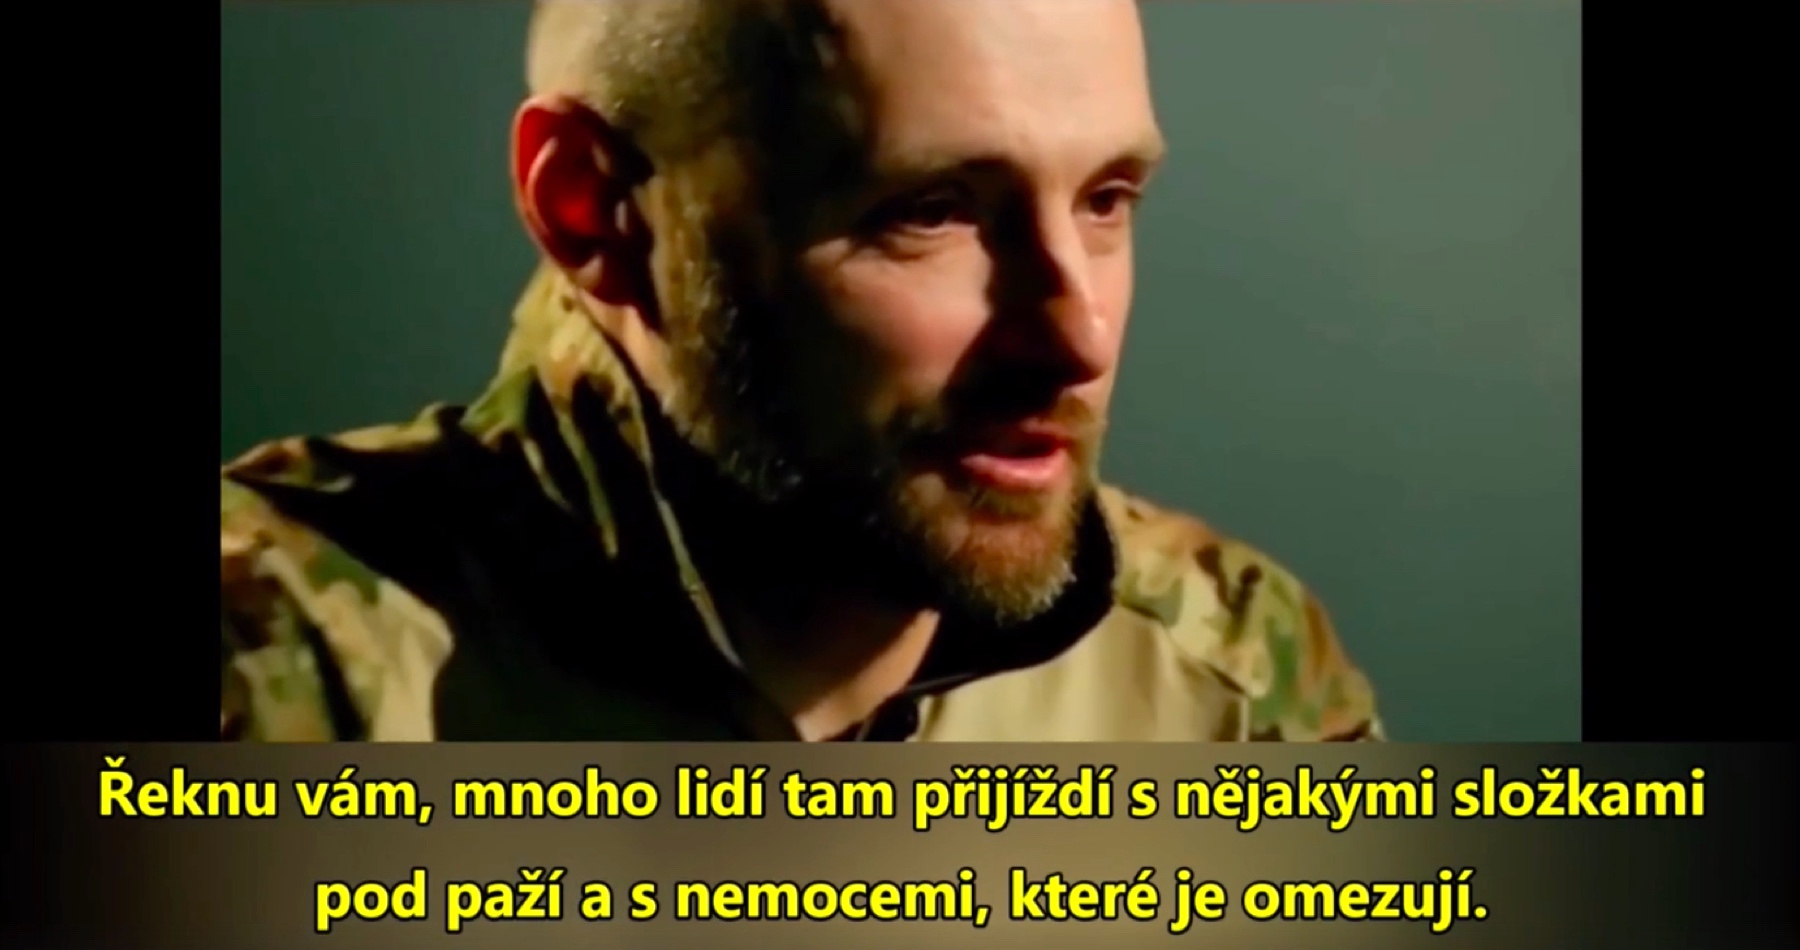 VIDEO: Velitel ukrajinské armády vylíčil v rozhovoru, jak probíhá totální mobilizace podle nově schváleného mobilizačního zákona: „Přivážejí nám v autobusech nemocné chlapy, všichni s věkem přes 50 let, mnozí z nich jsou alkoholici z venkova s rozbitými nosy a s jaterní cirhózou. Není z koho vybírat!“